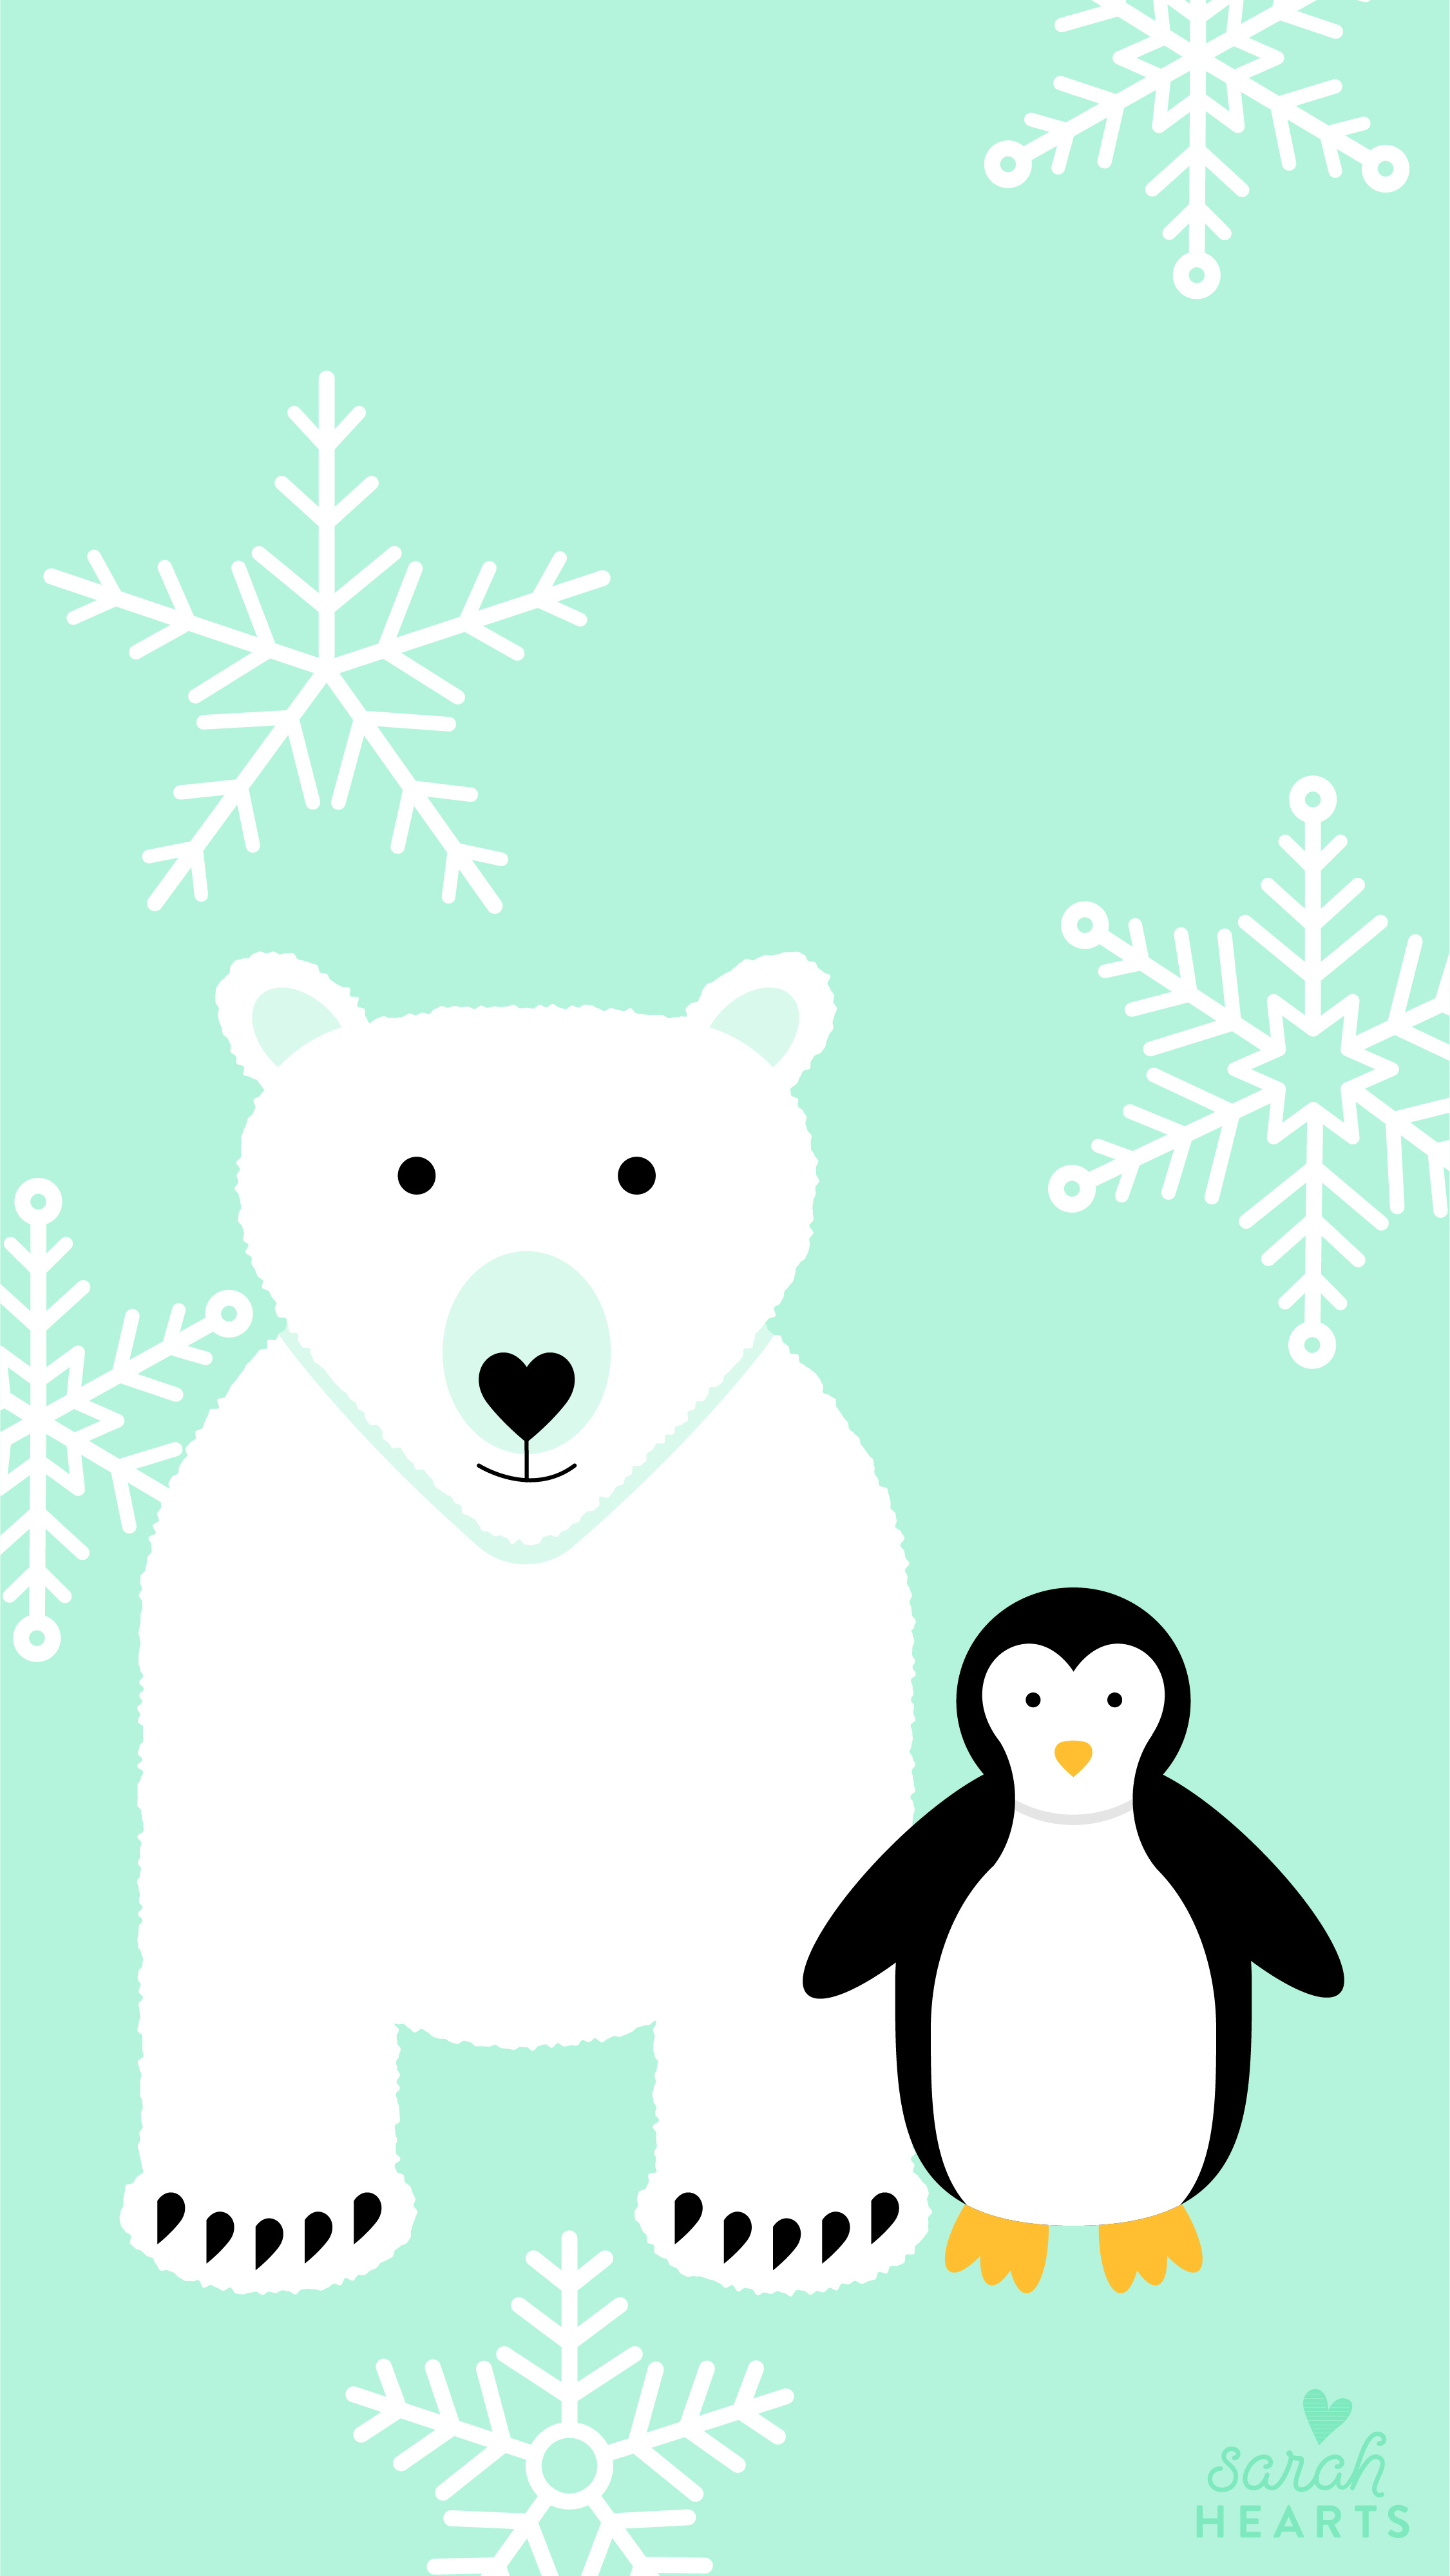 Polar Bear and Penguin January 2018 Calendar Wallpaper   Sarah Hearts